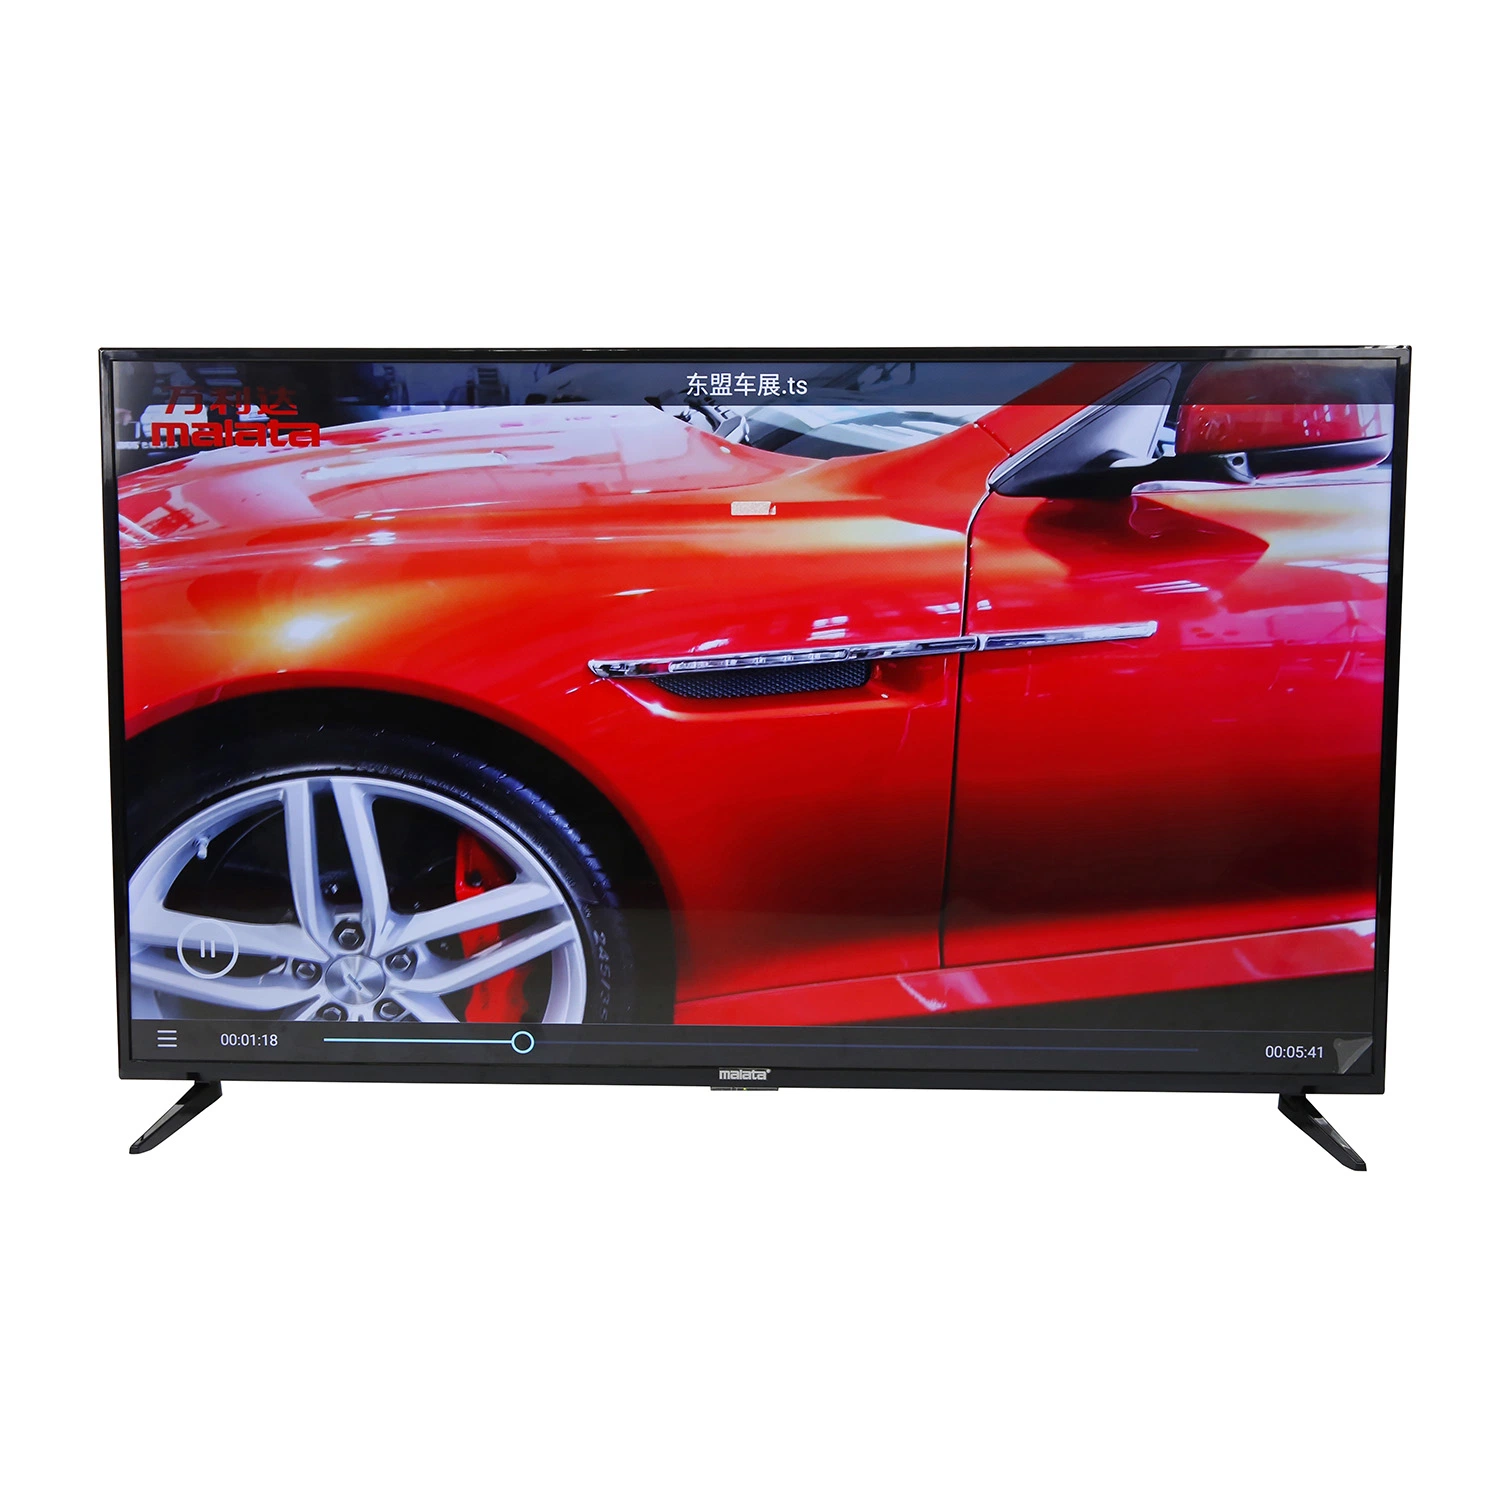 كلية مصنعا جديدة 24 32 42 43 50 55 65 شاشة عرض LCD موديل موسيقى 75 بوصة من سماعات HiFi تناظرية أو التلفزيون الرقمي التلفزيون Smart LCD Android TV